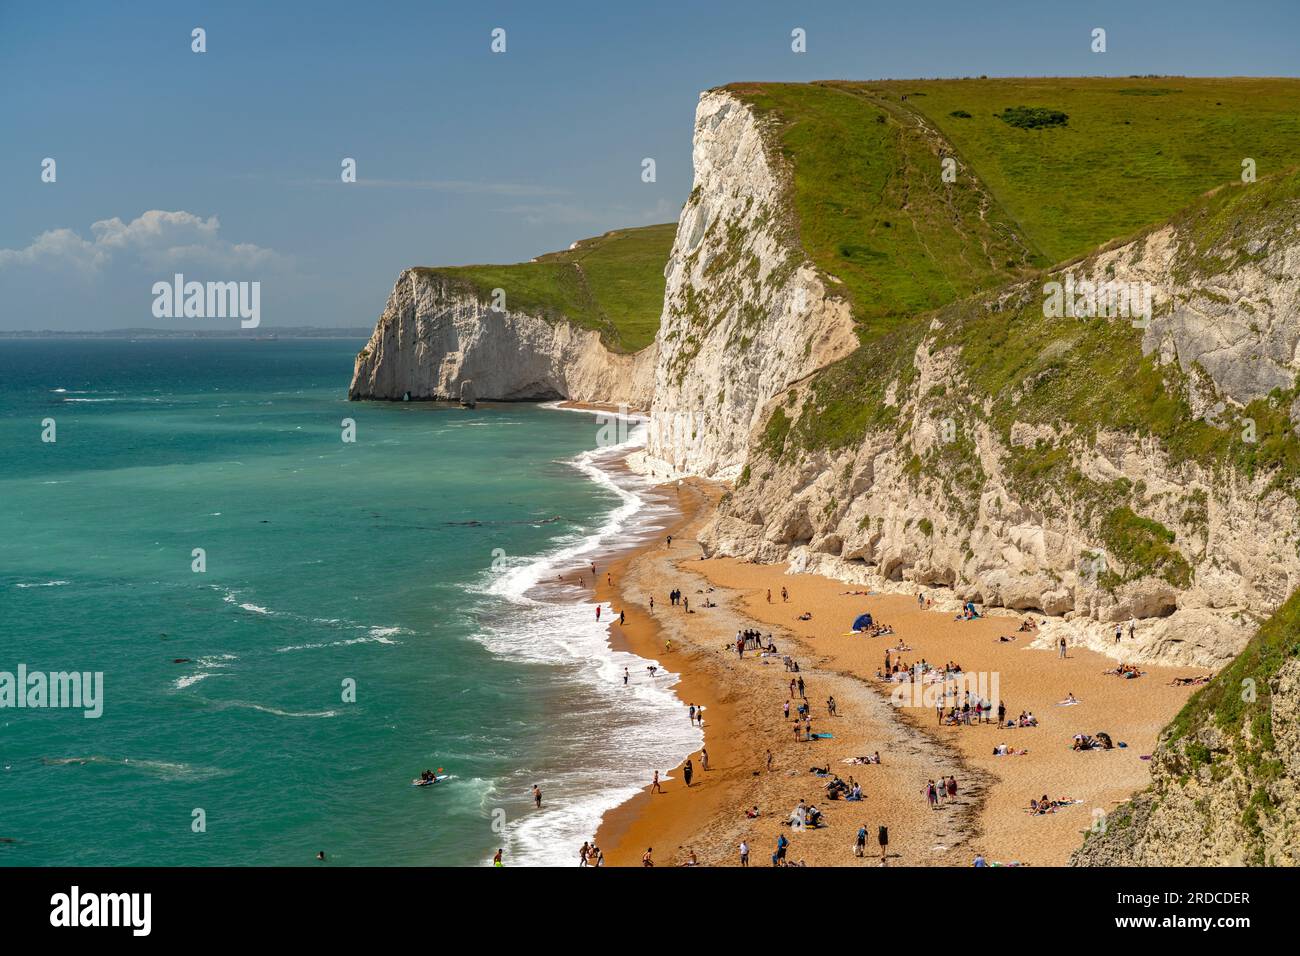 Weisse Klippen und Strand des UNESCO Weltnaturerbe Jurassic Coast, England, Großbritannien, Europa  | White cliffs and beach of the UNESCO world herit Stock Photo